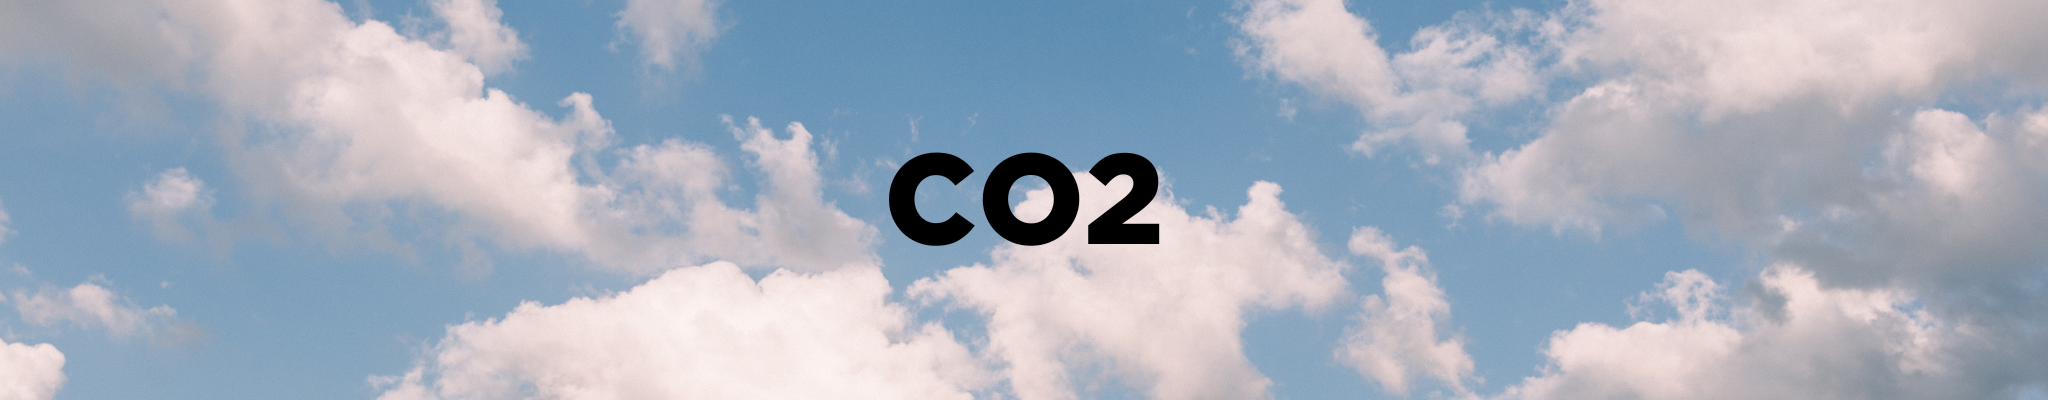 Blå himmel med skyer og teksten "CO2"